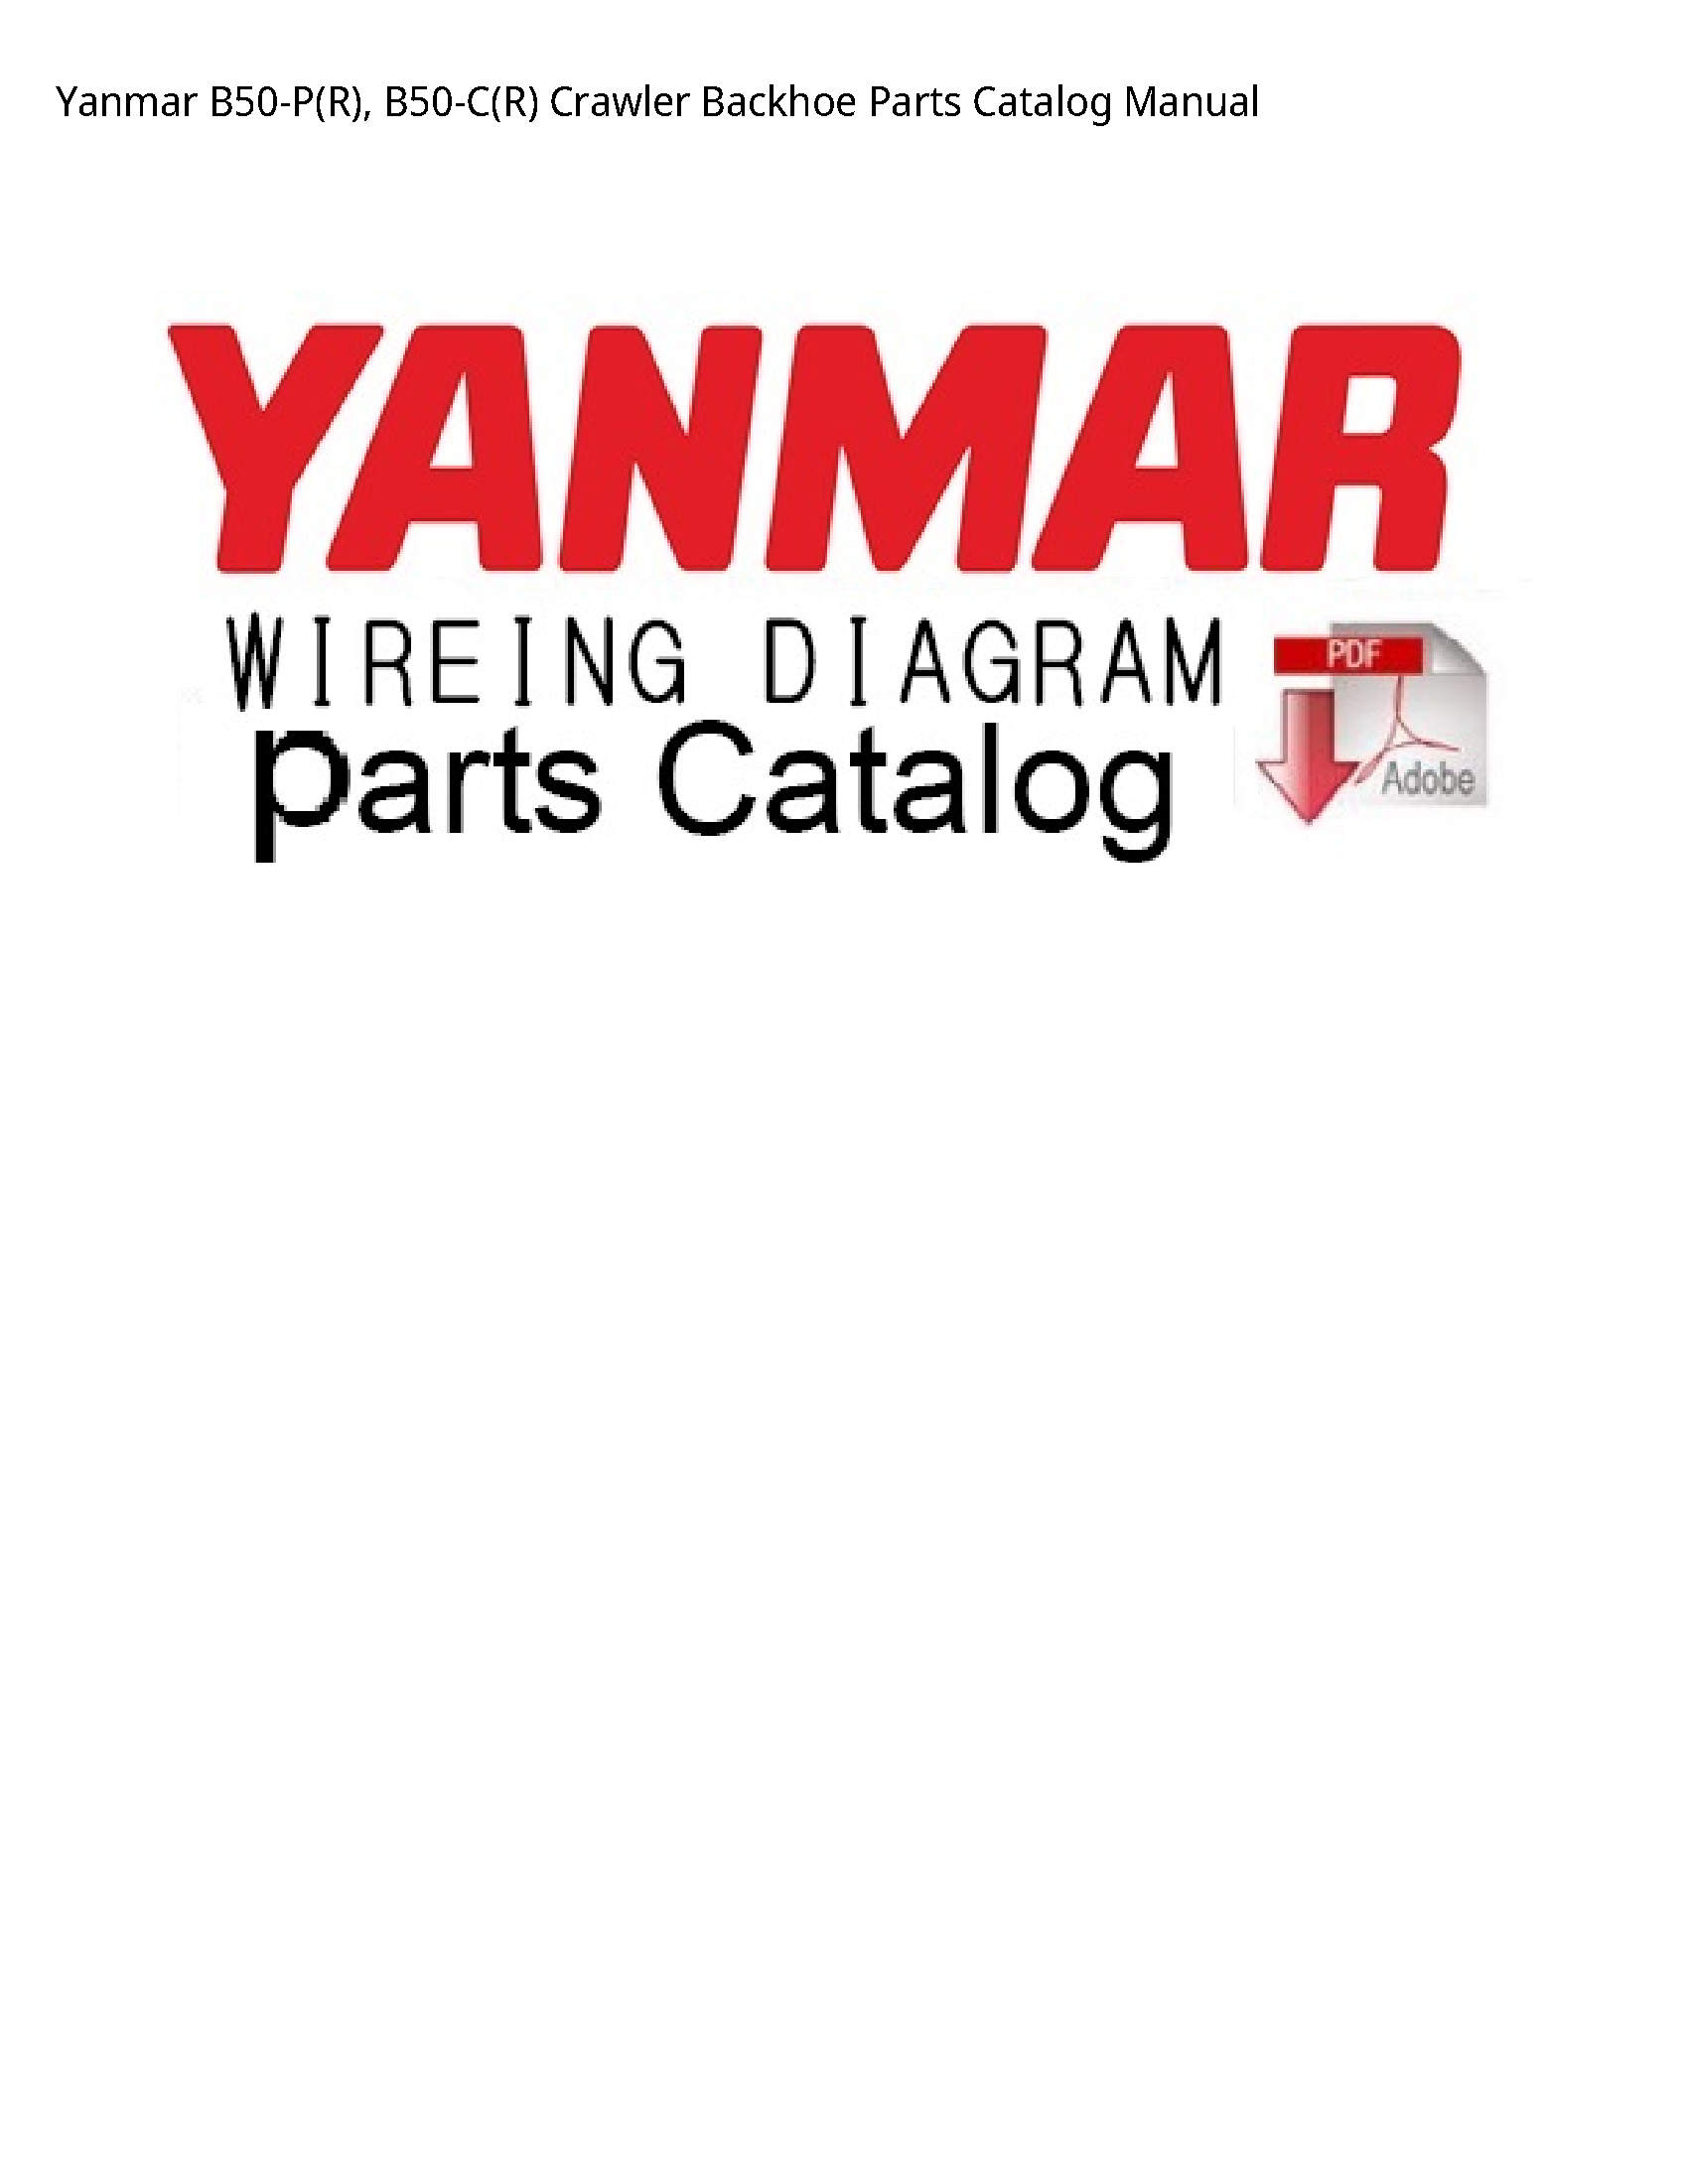 Yanmar B50-P(R) Crawler Backhoe Parts Catalog manual